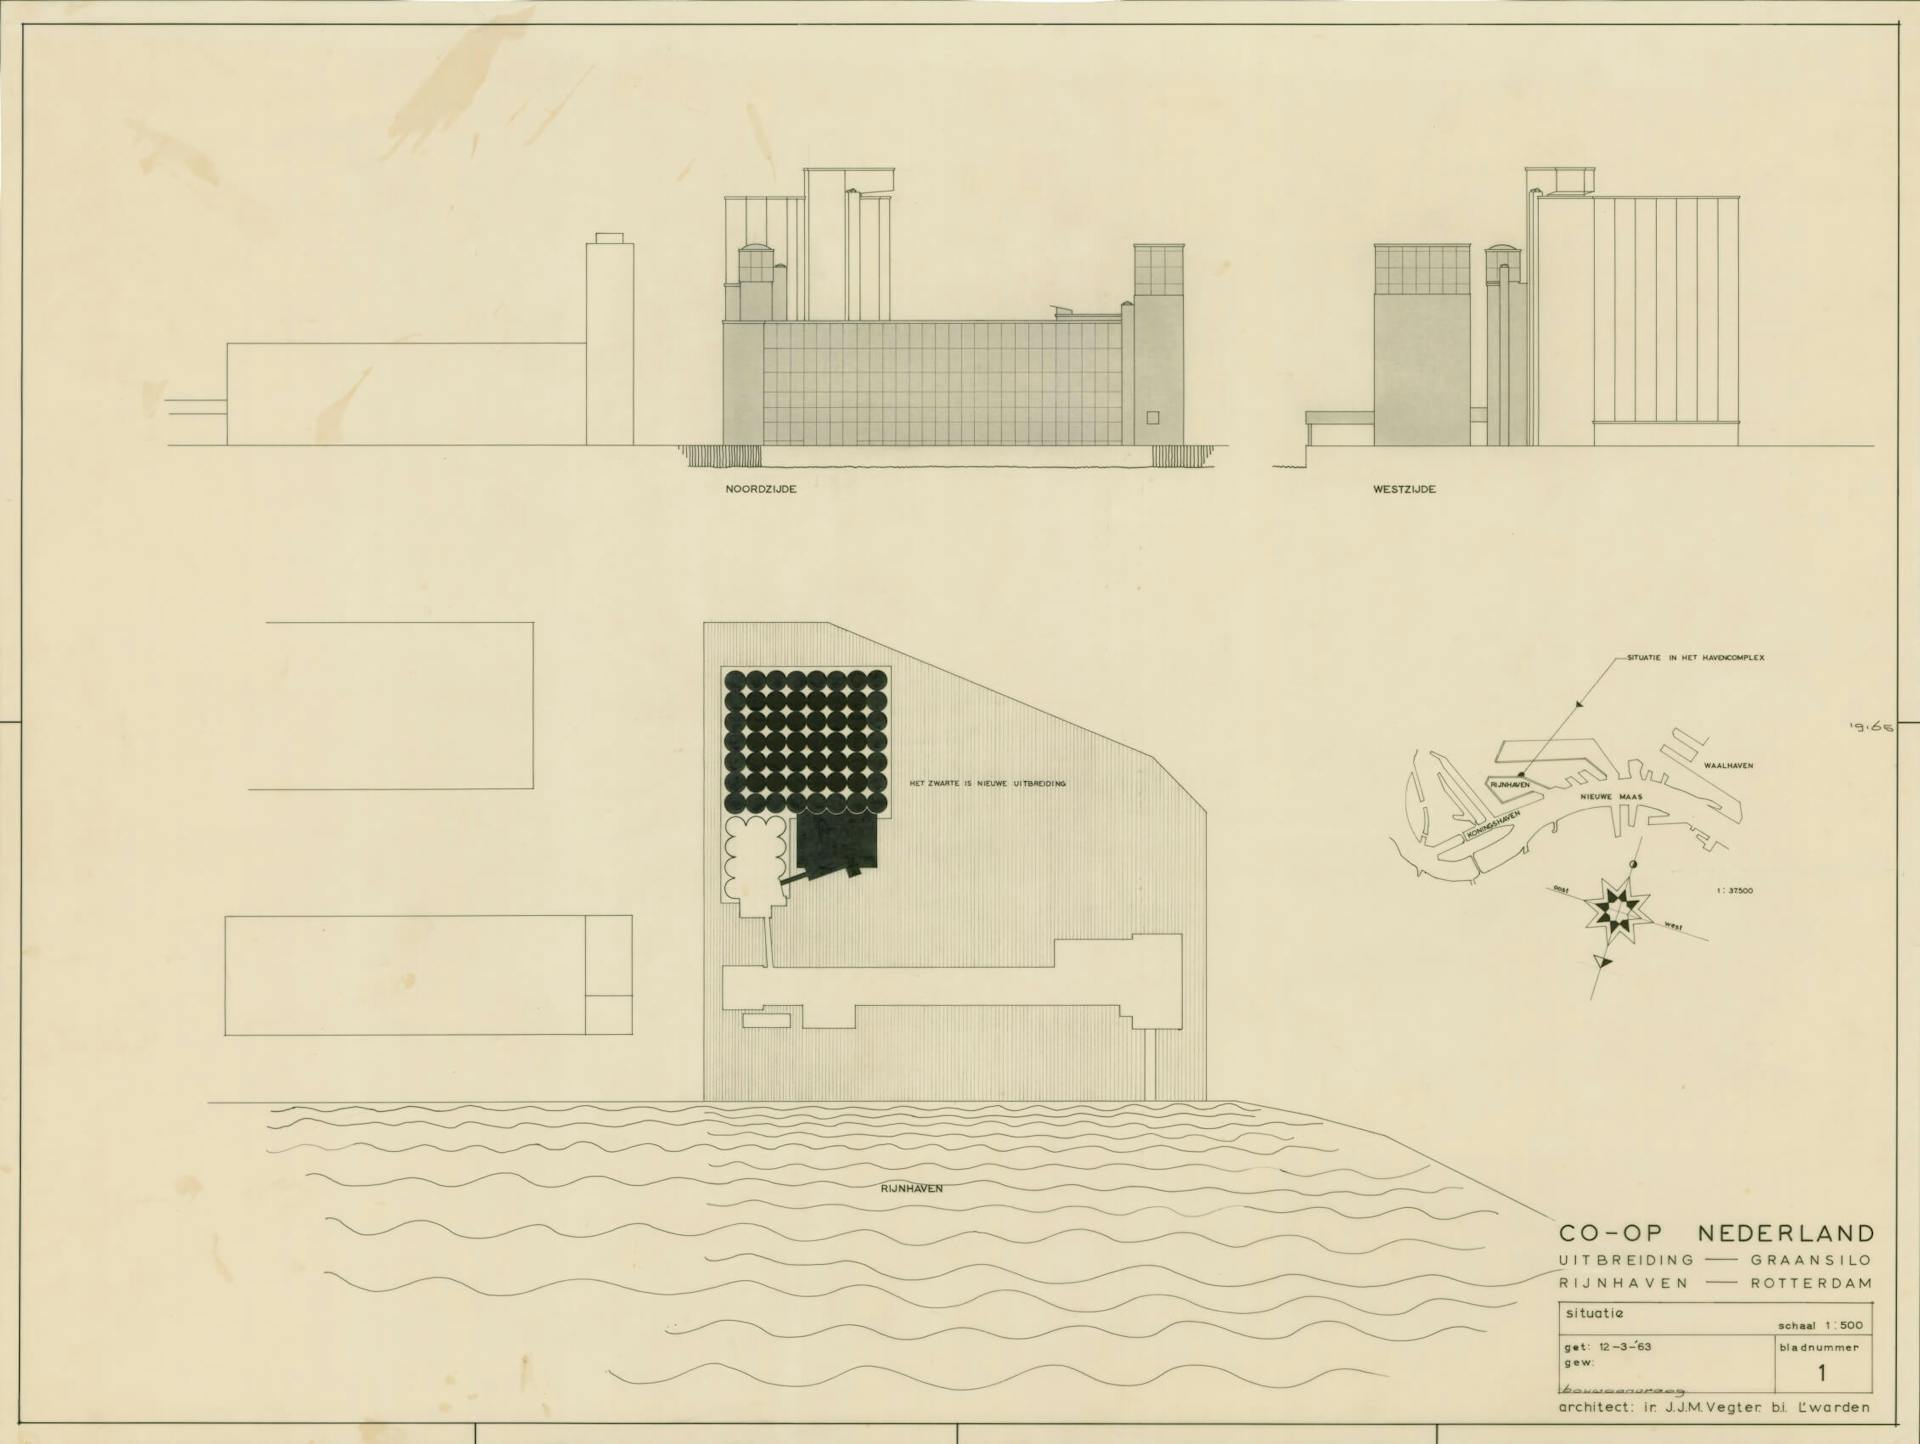 J. Vegter, i.s.m. constructeur A. Arohnson, ontwerp voor de uitbreiding met een nieuwe graansilo van de Coöp Meelfabriek, Rotterdam, 1964. Archief: J.J.M. Vegter, dossier Coöp Meelfabriek